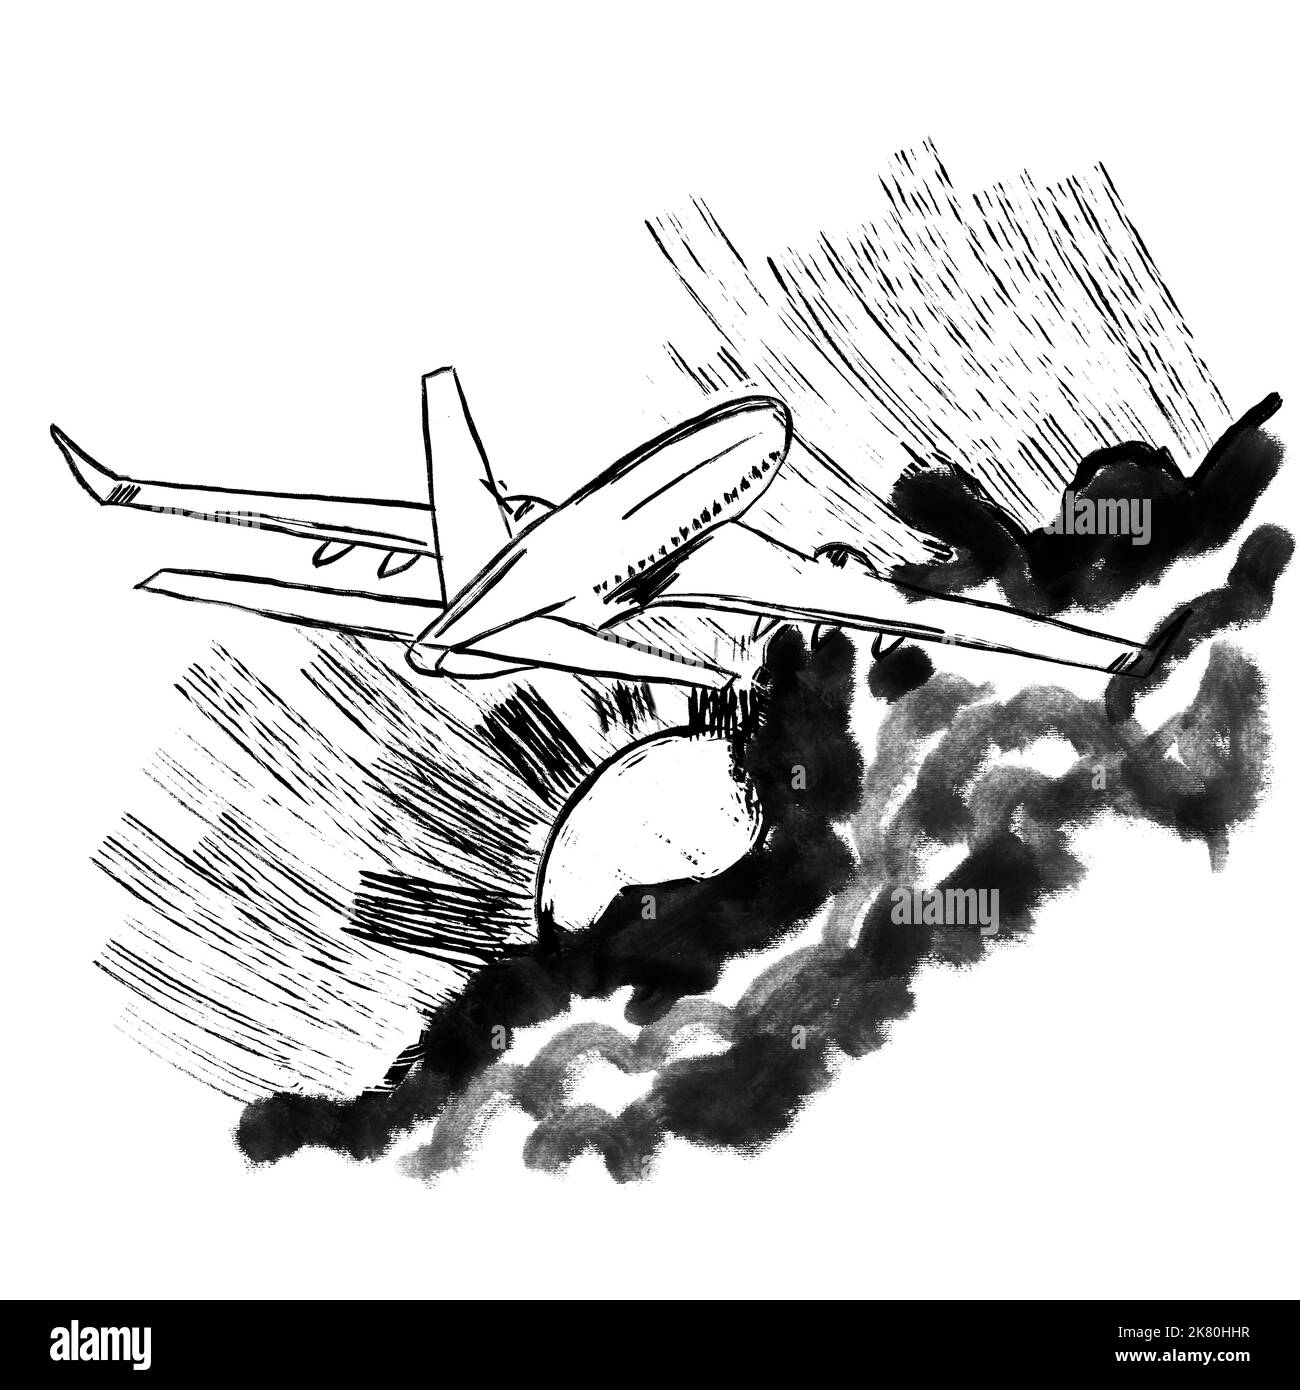 Illustrazione disegnata a mano di aeroplano aereo aereo aereo aereo velivolo in cielo nuvole sole. Trasporto aereo, design minimalismo linea nera su sfondo bianco, stampa a inchiostro, disegno grafico Foto Stock